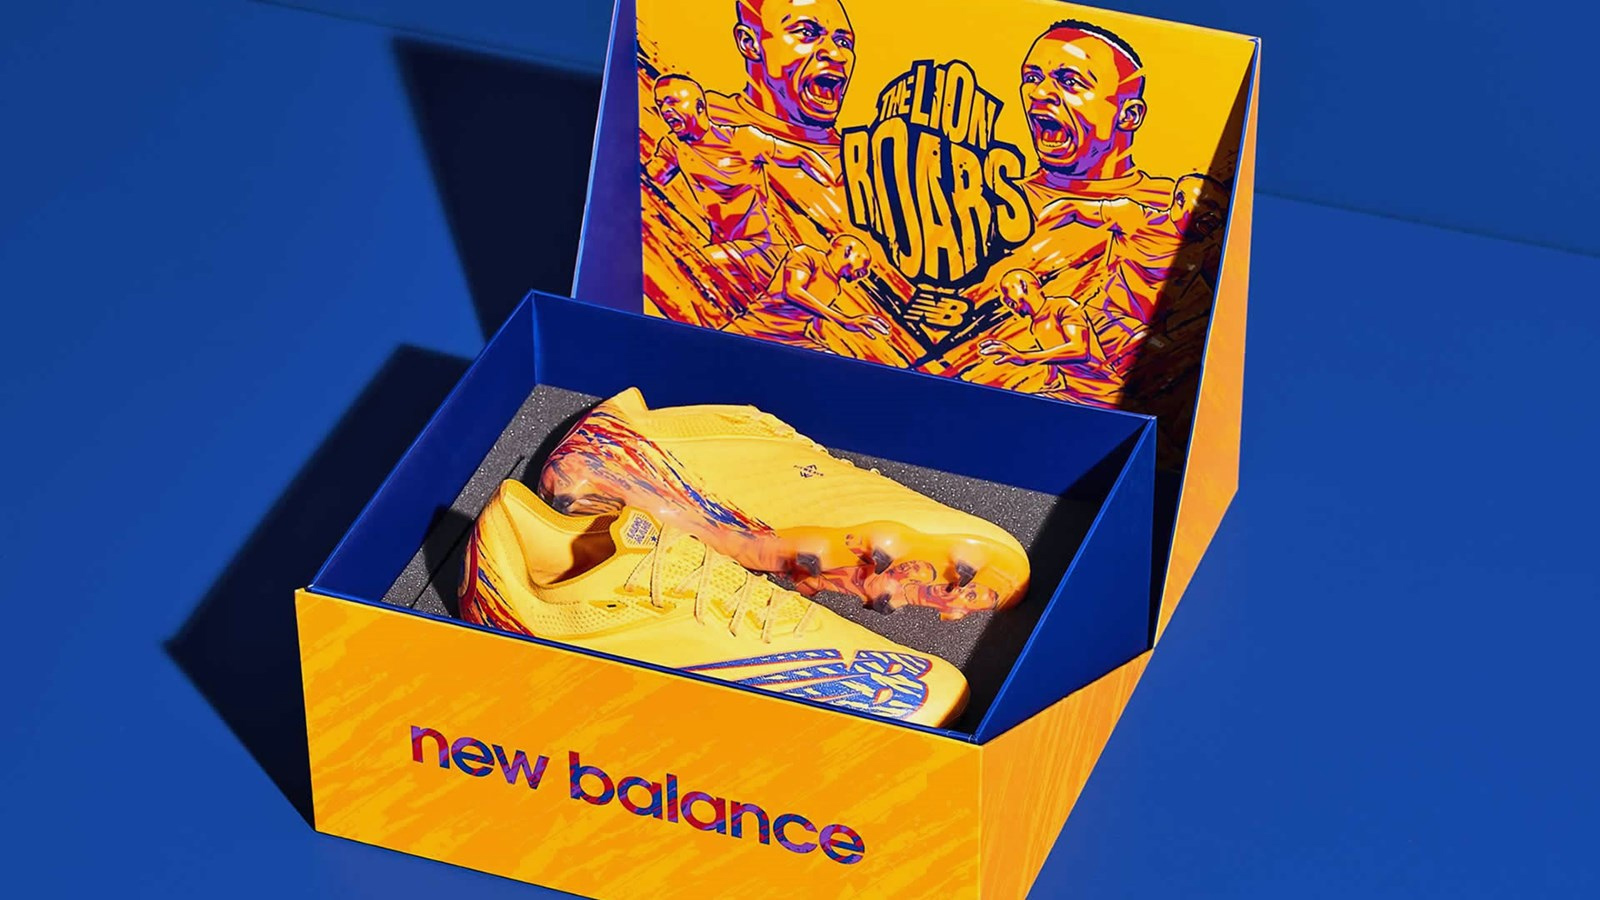 Giày đá bóng New Balance ‘The Lion Roars’ đặc biệt dành cho Sadio Mane - Khai màn bữa tiệc bóng đá AFCON